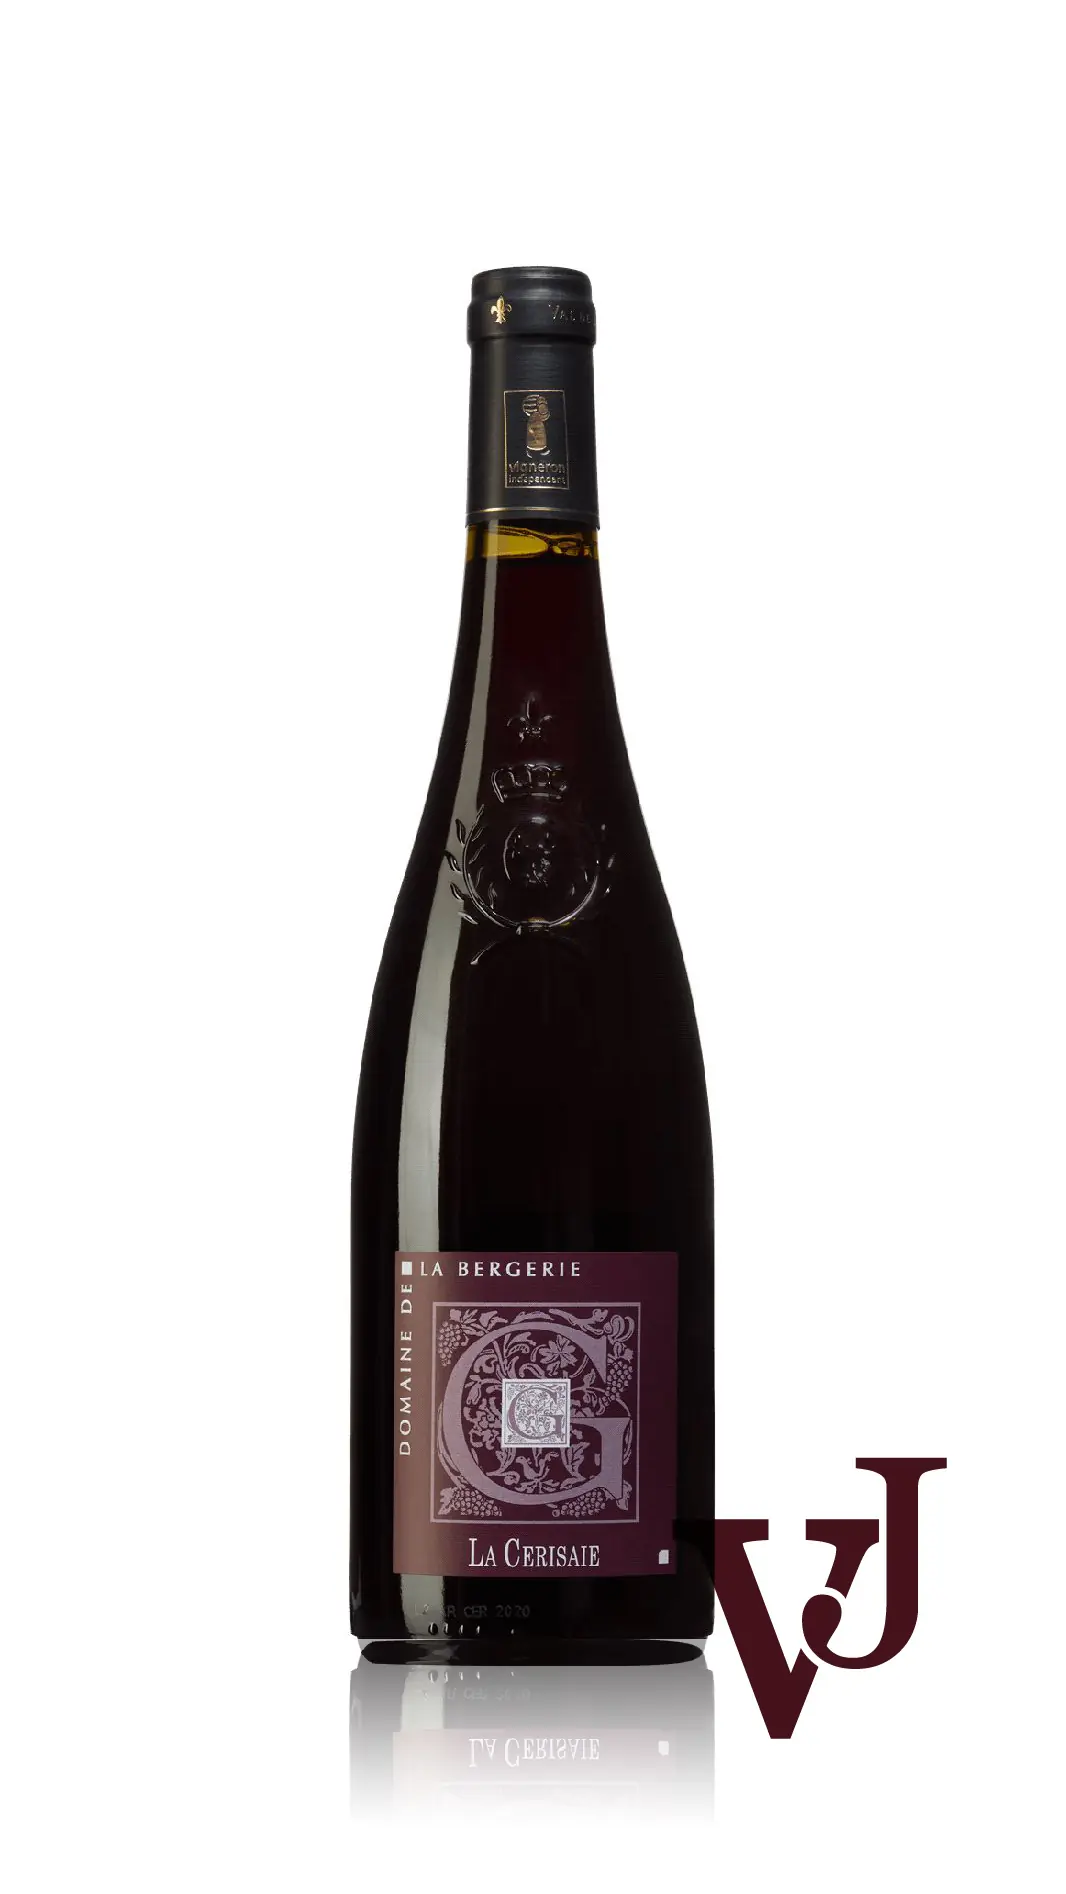 Rött Vin - La Cerisaie artikel nummer 9468601 från producenten Domaine de la Bergerie från området Frankrike - Vinjournalen.se